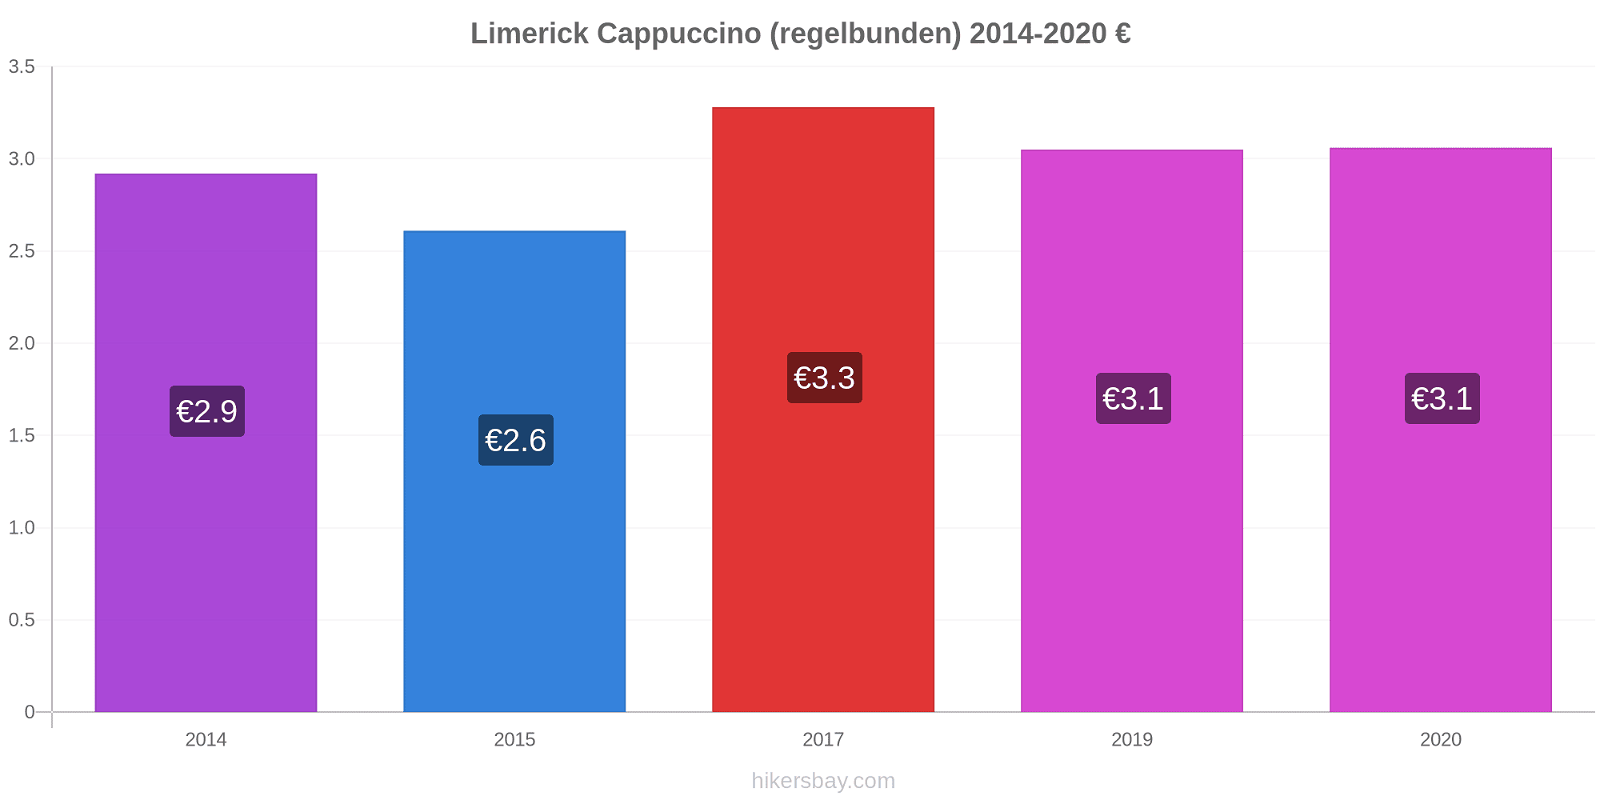 Limerick prisförändringar Cappuccino (regelbunden) hikersbay.com